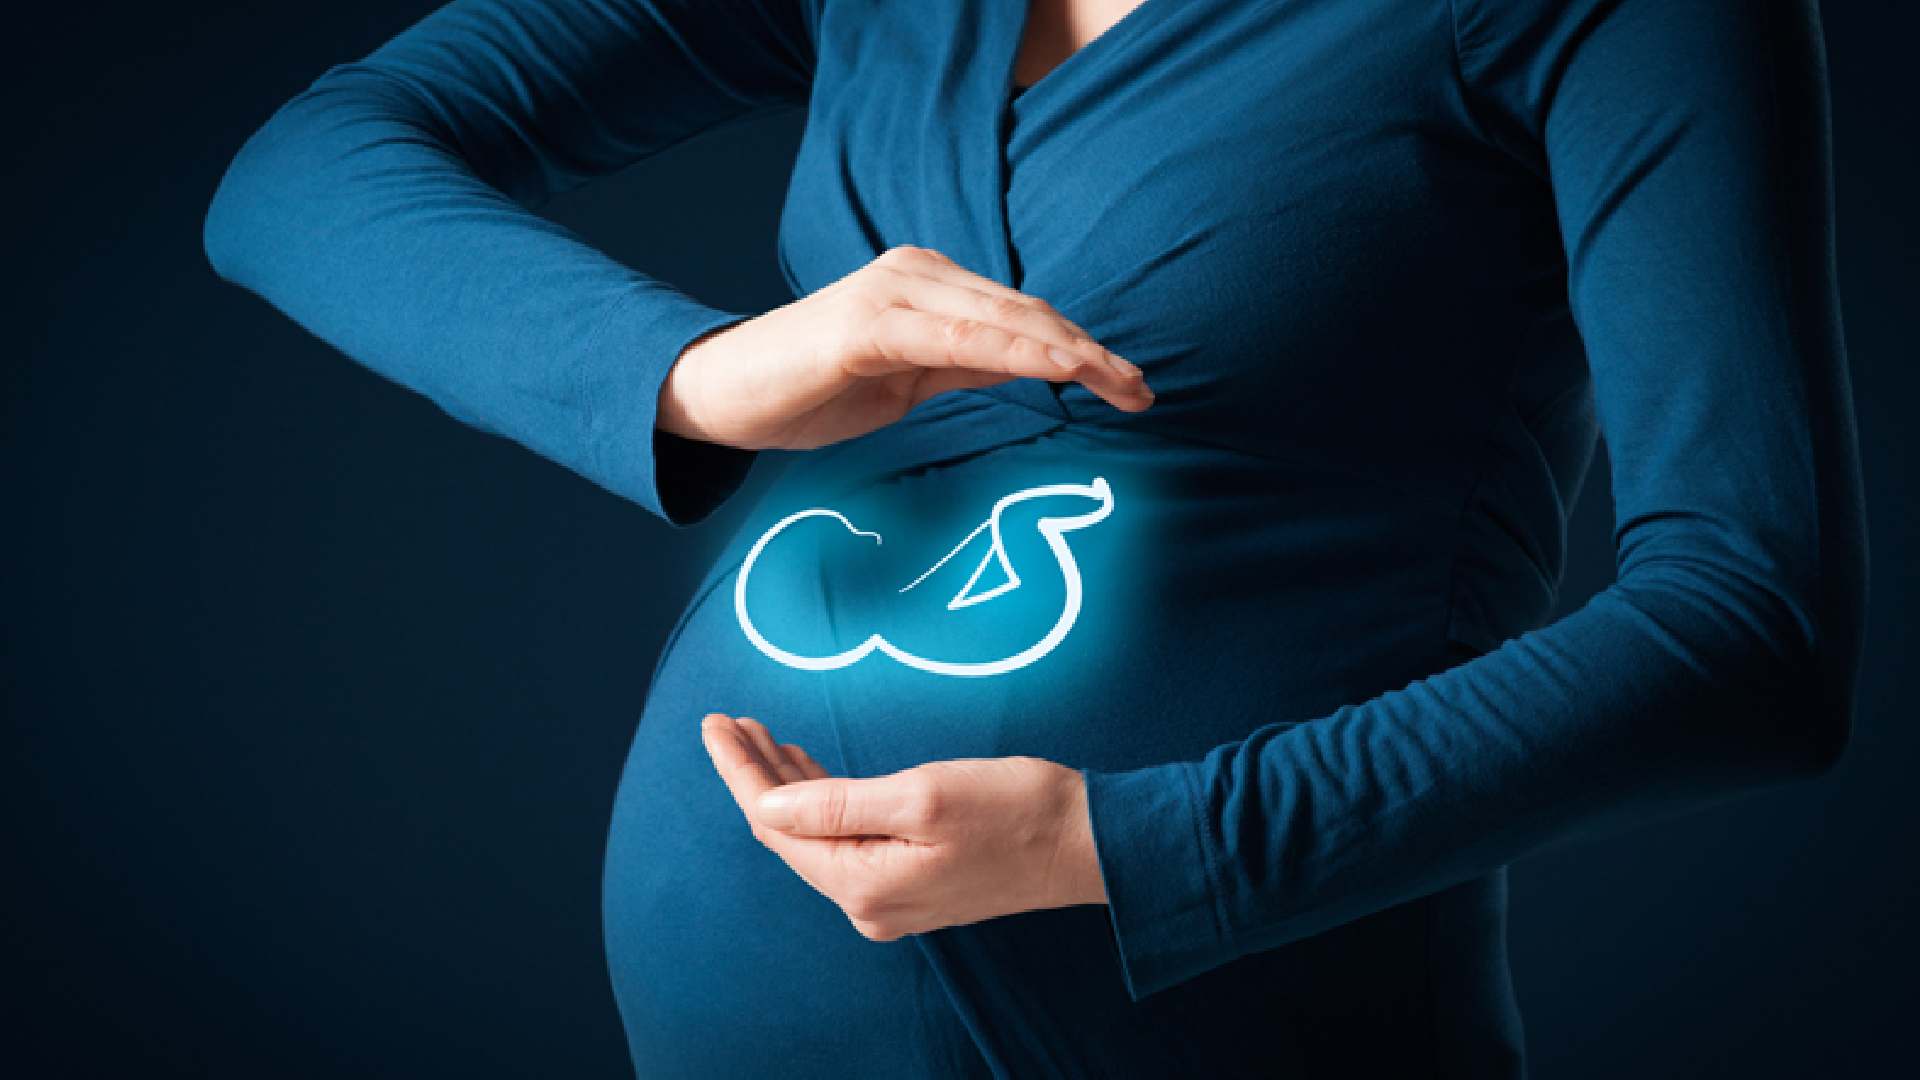 insurance for pregnancy in UAE